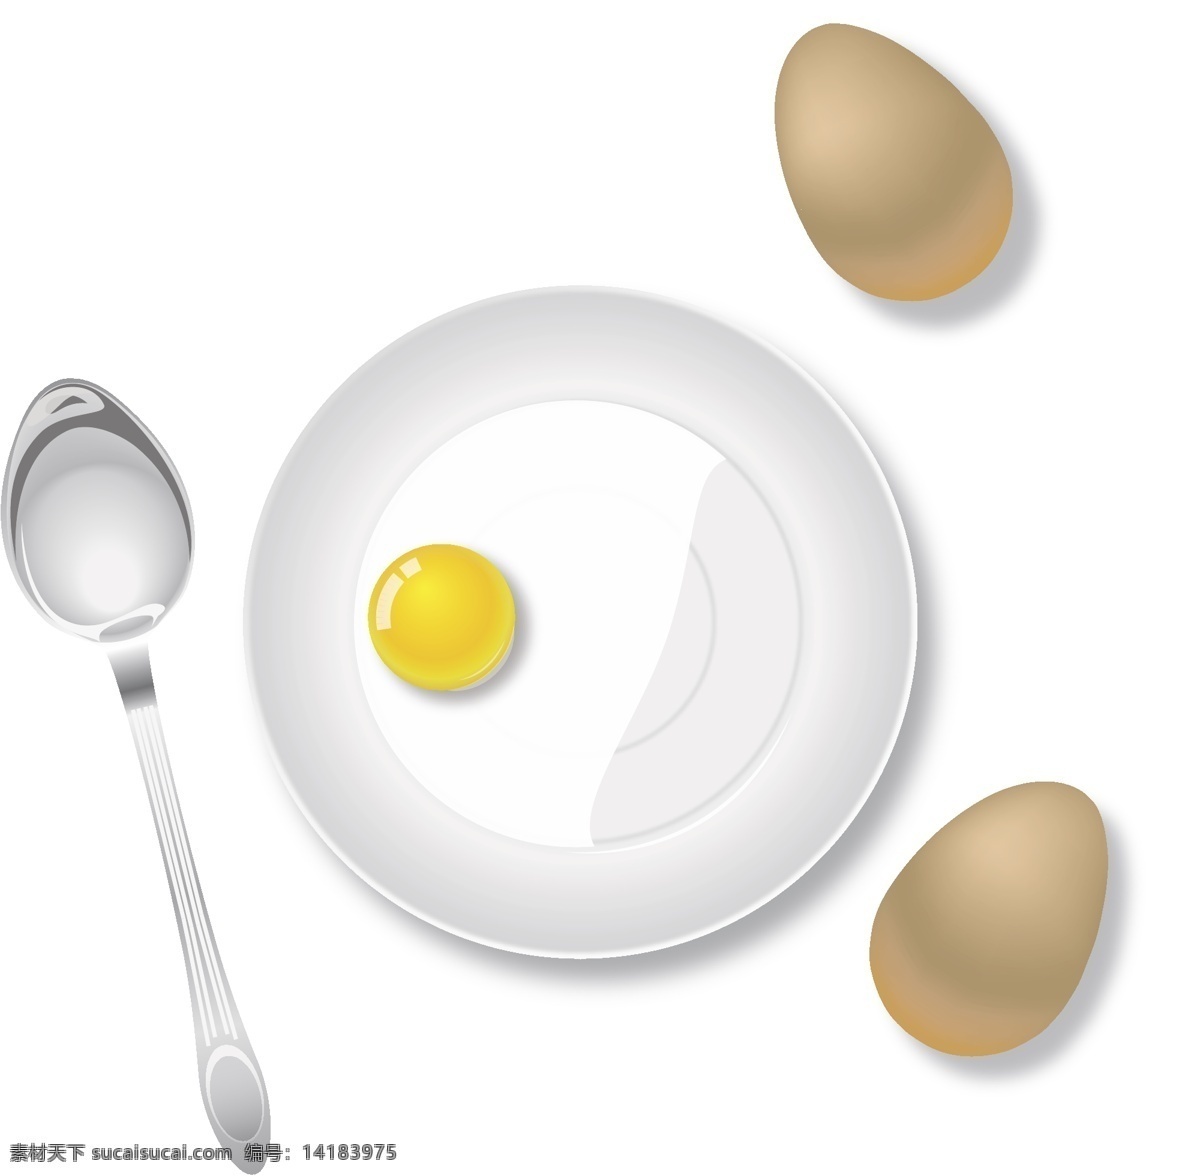 矢量勺子 蛋黄 蛋清 鸡蛋 勺子 盘子 鸡蛋素材 勺子素材 蛋液 矢量鸡蛋素材 盘子和鸡蛋 勺子和盘子 汤匙 汤匙素材